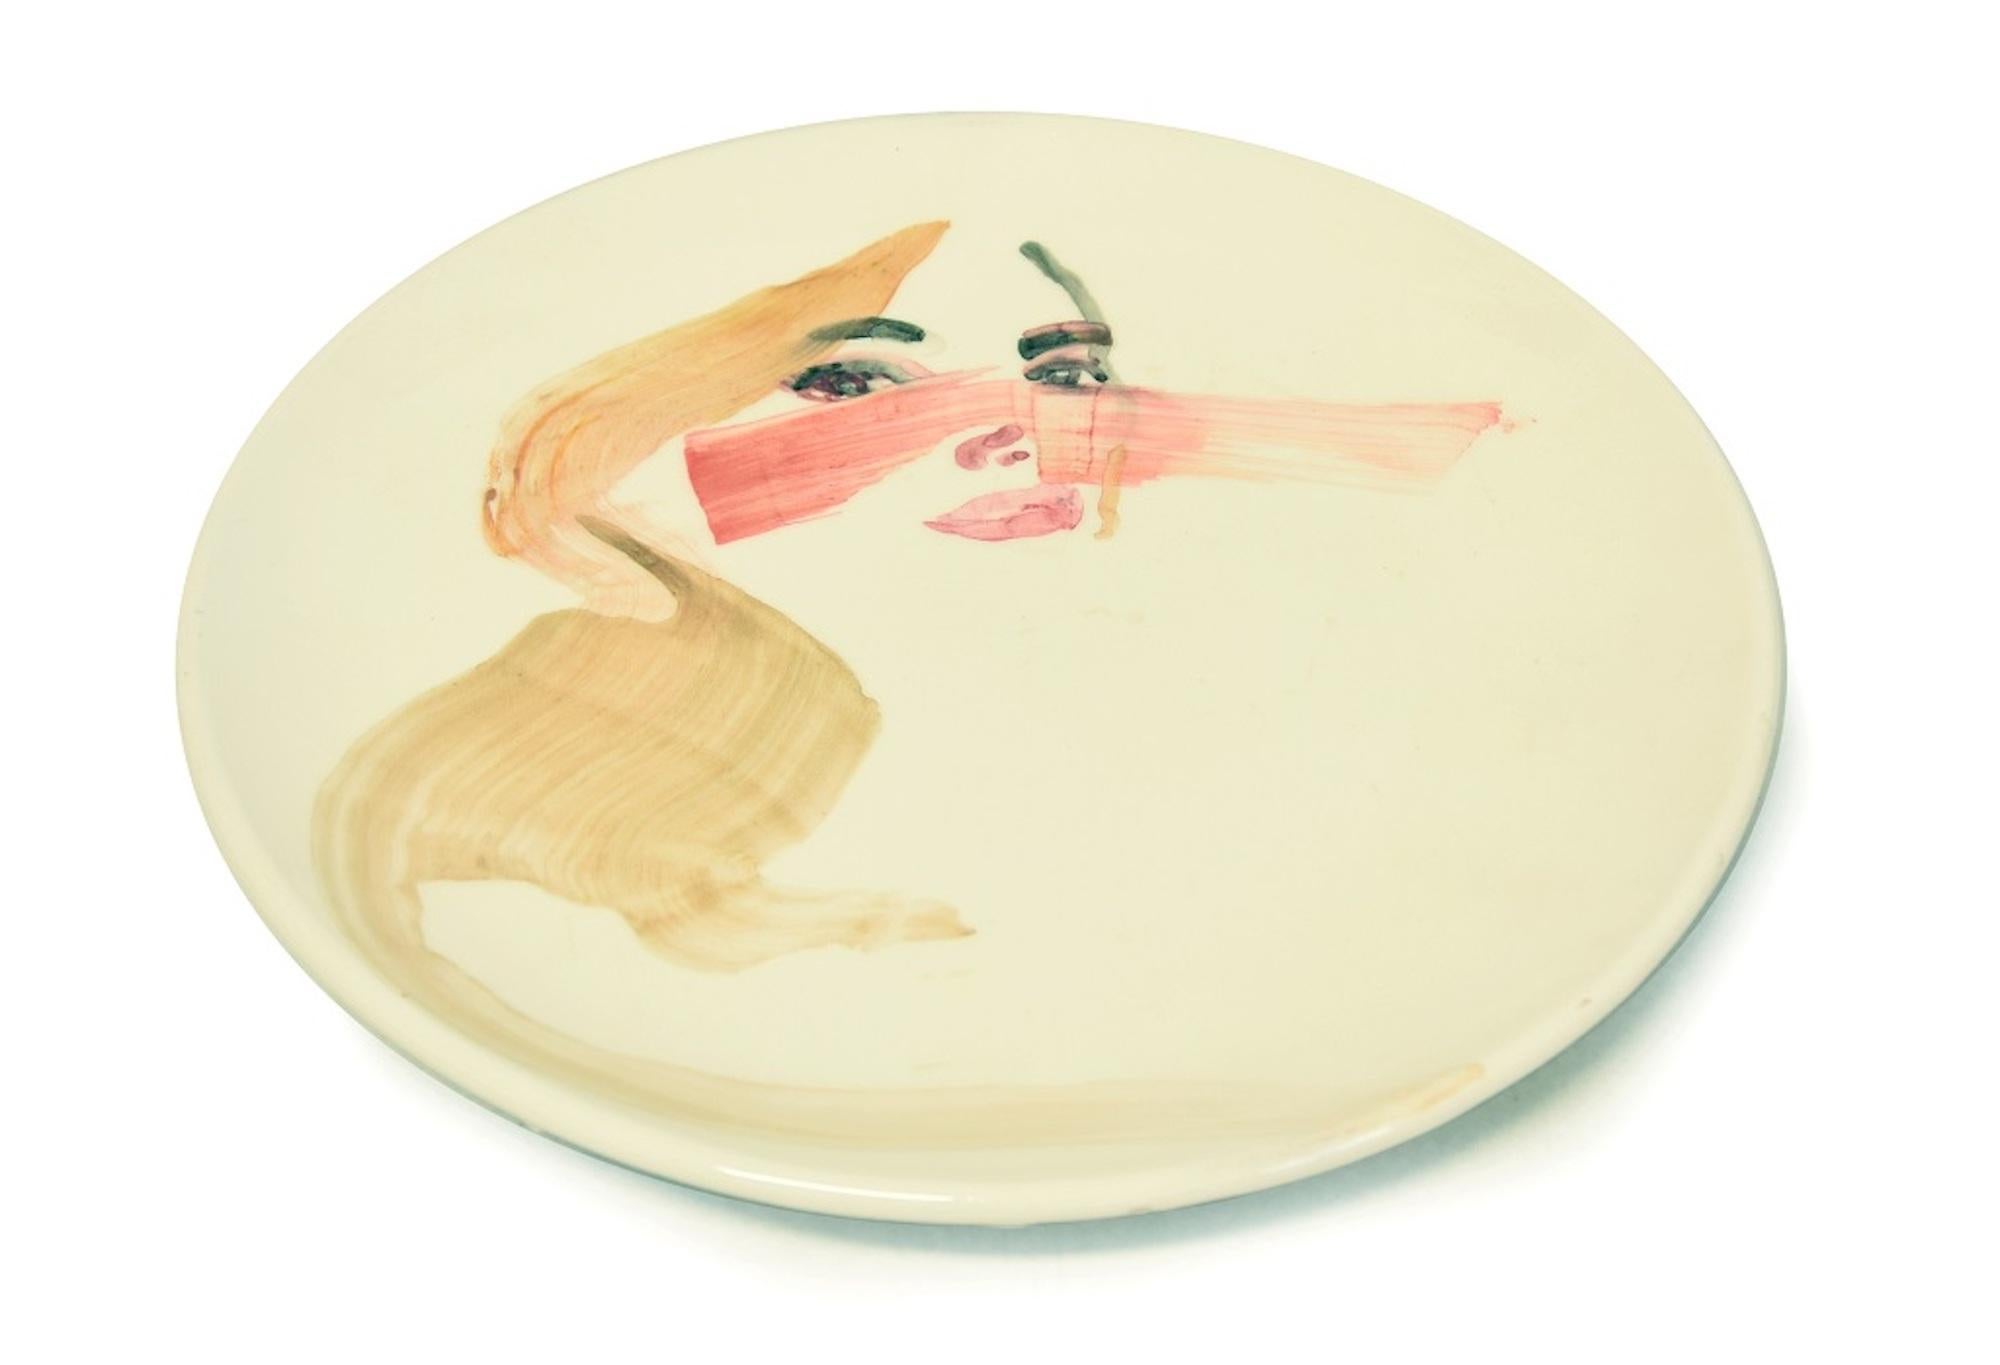 Lady ist eine wunderschöne handgefertigte flache Keramikschale, die von der russischen Nachwuchskünstlerin Anastasia Kurakina im Jahr 2019 realisiert wurde. Einzigartige Kopie.

Signiert und datiert auf der Rückseite in der Mitte.

Dies ist ein